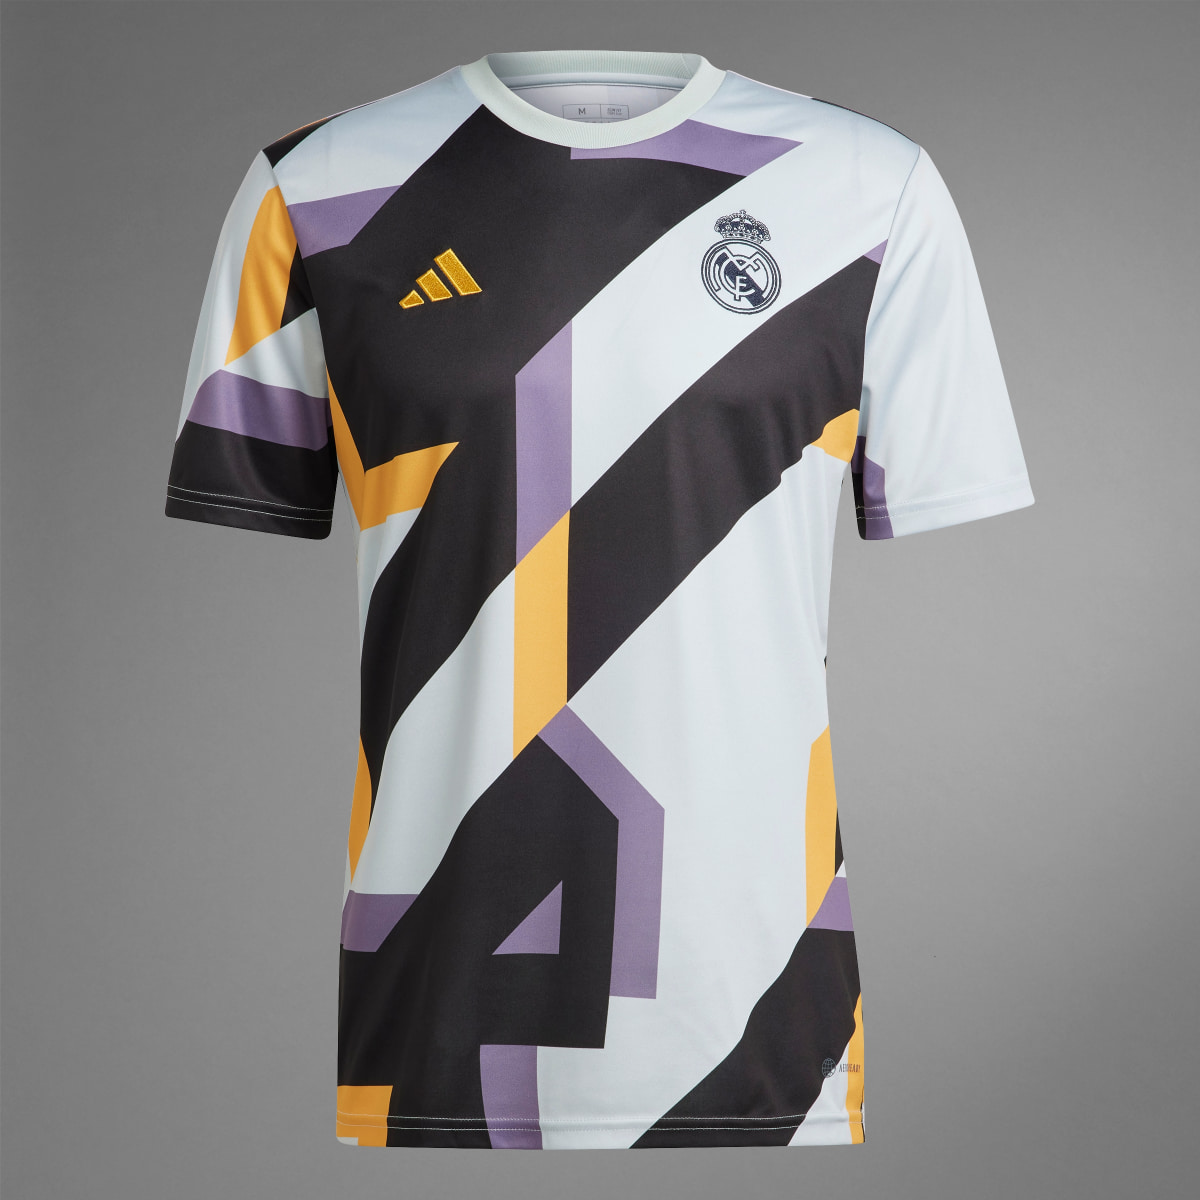 Adidas Camisola de Aquecimento do Real Madrid. 10